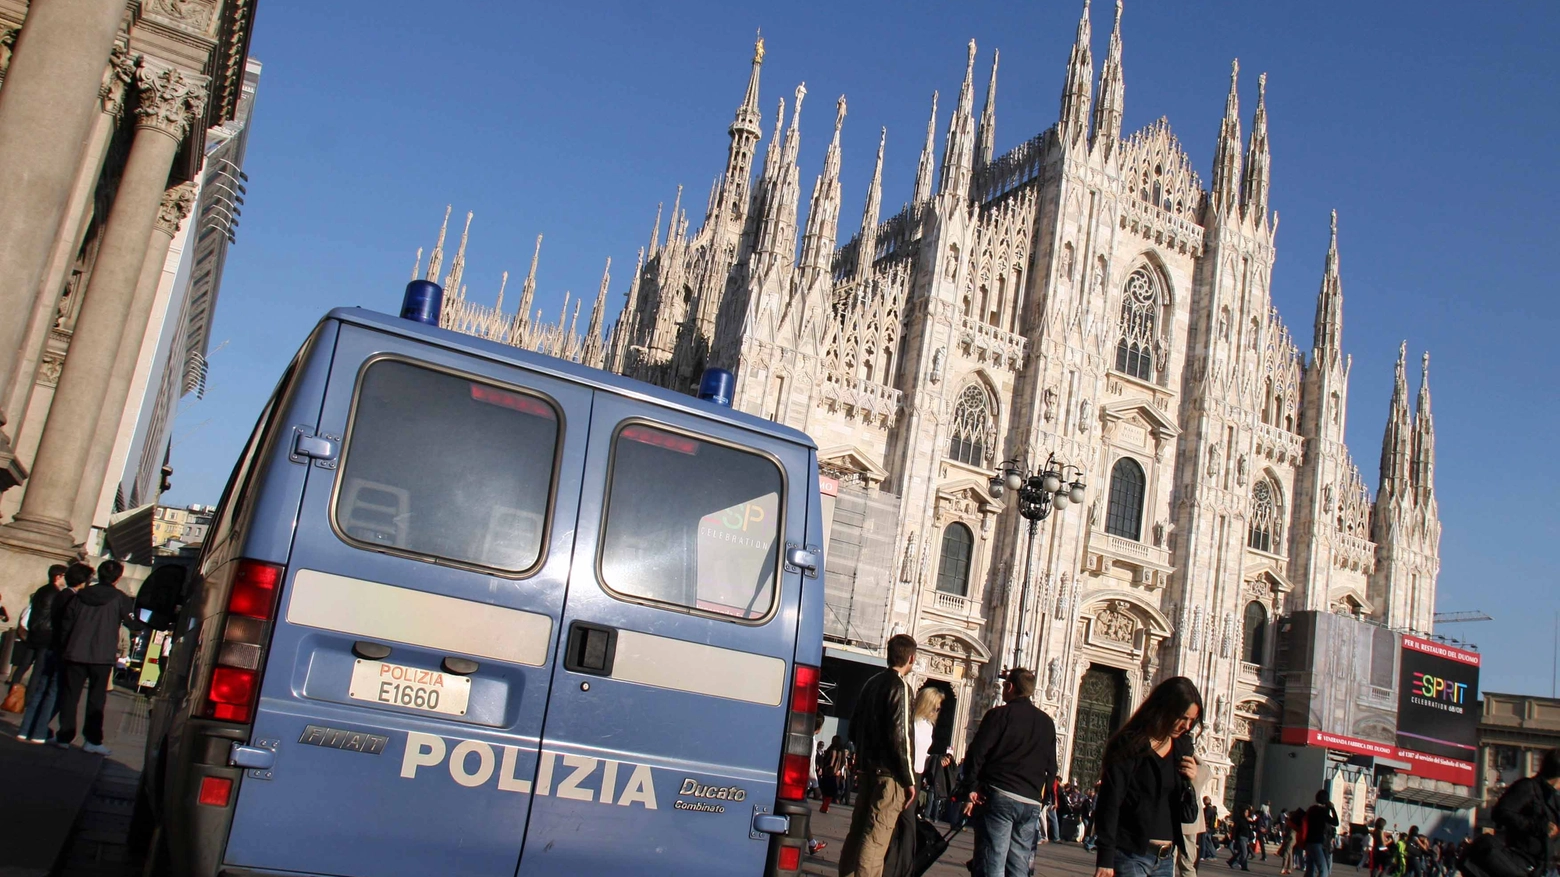 Polizia in piazza Duomo, dove si è verificato l'aggressione (Archivio)